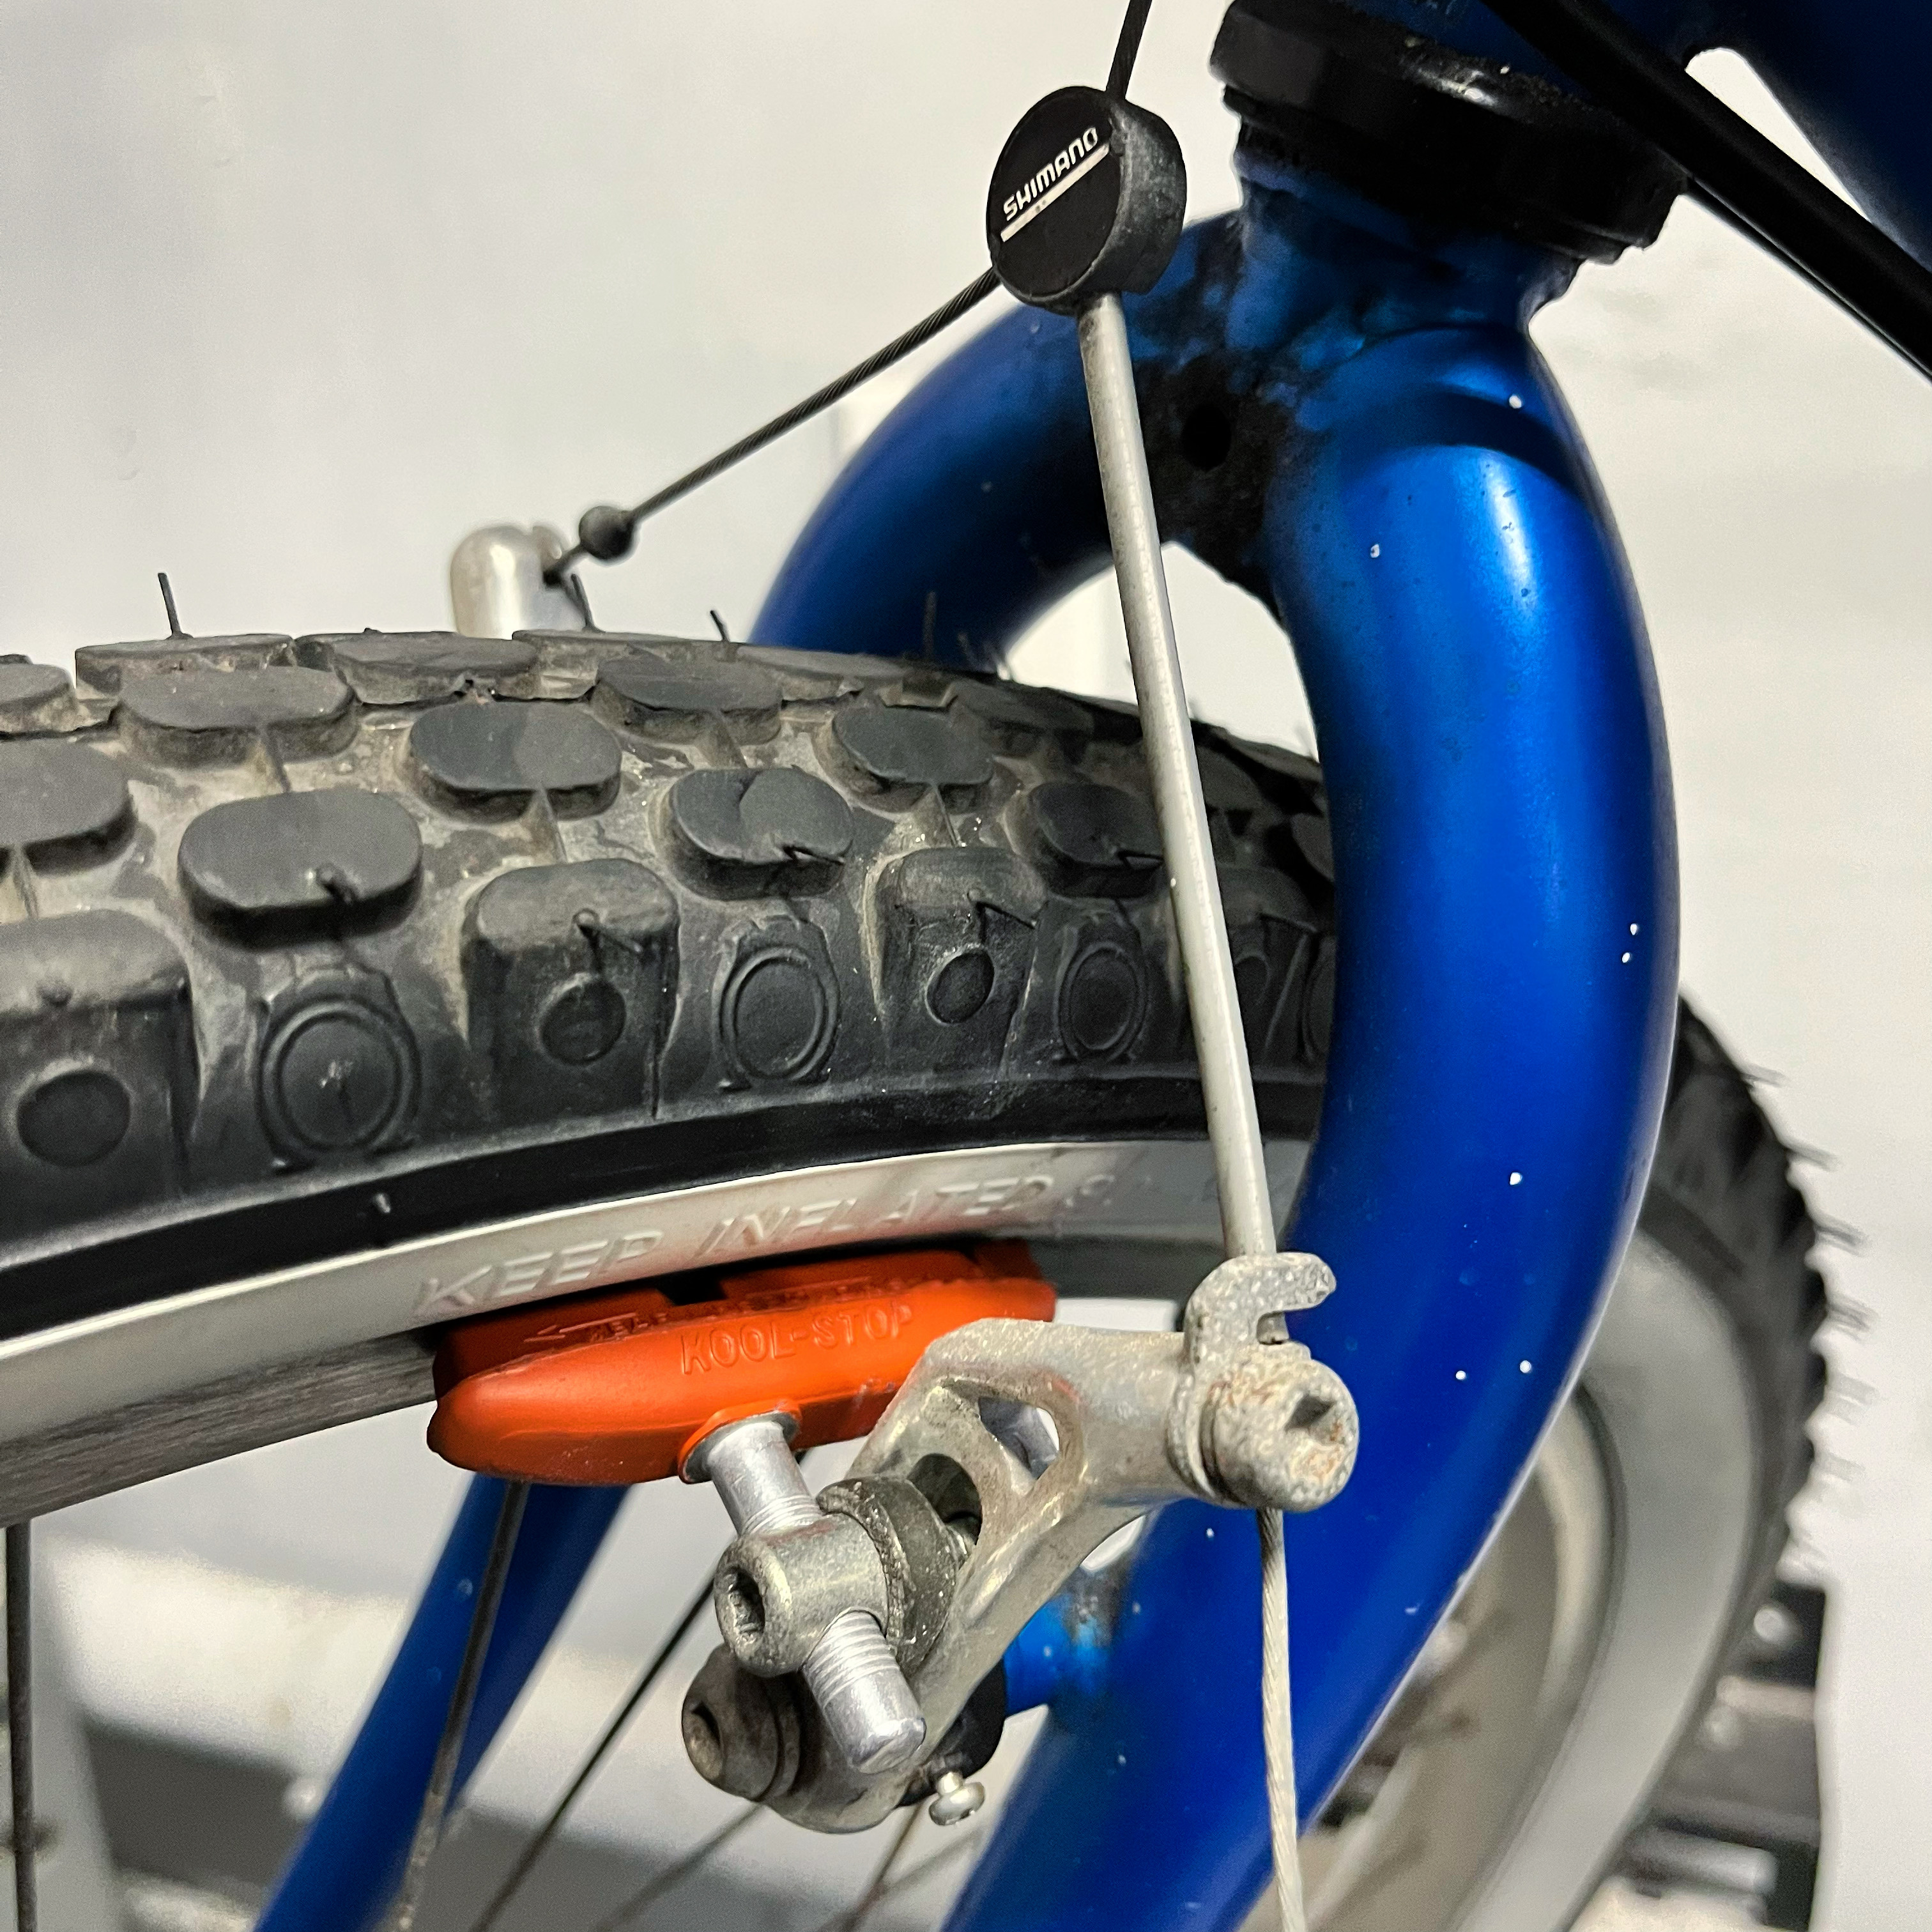 V-brakes too weak - Bicycles Stack Exchange